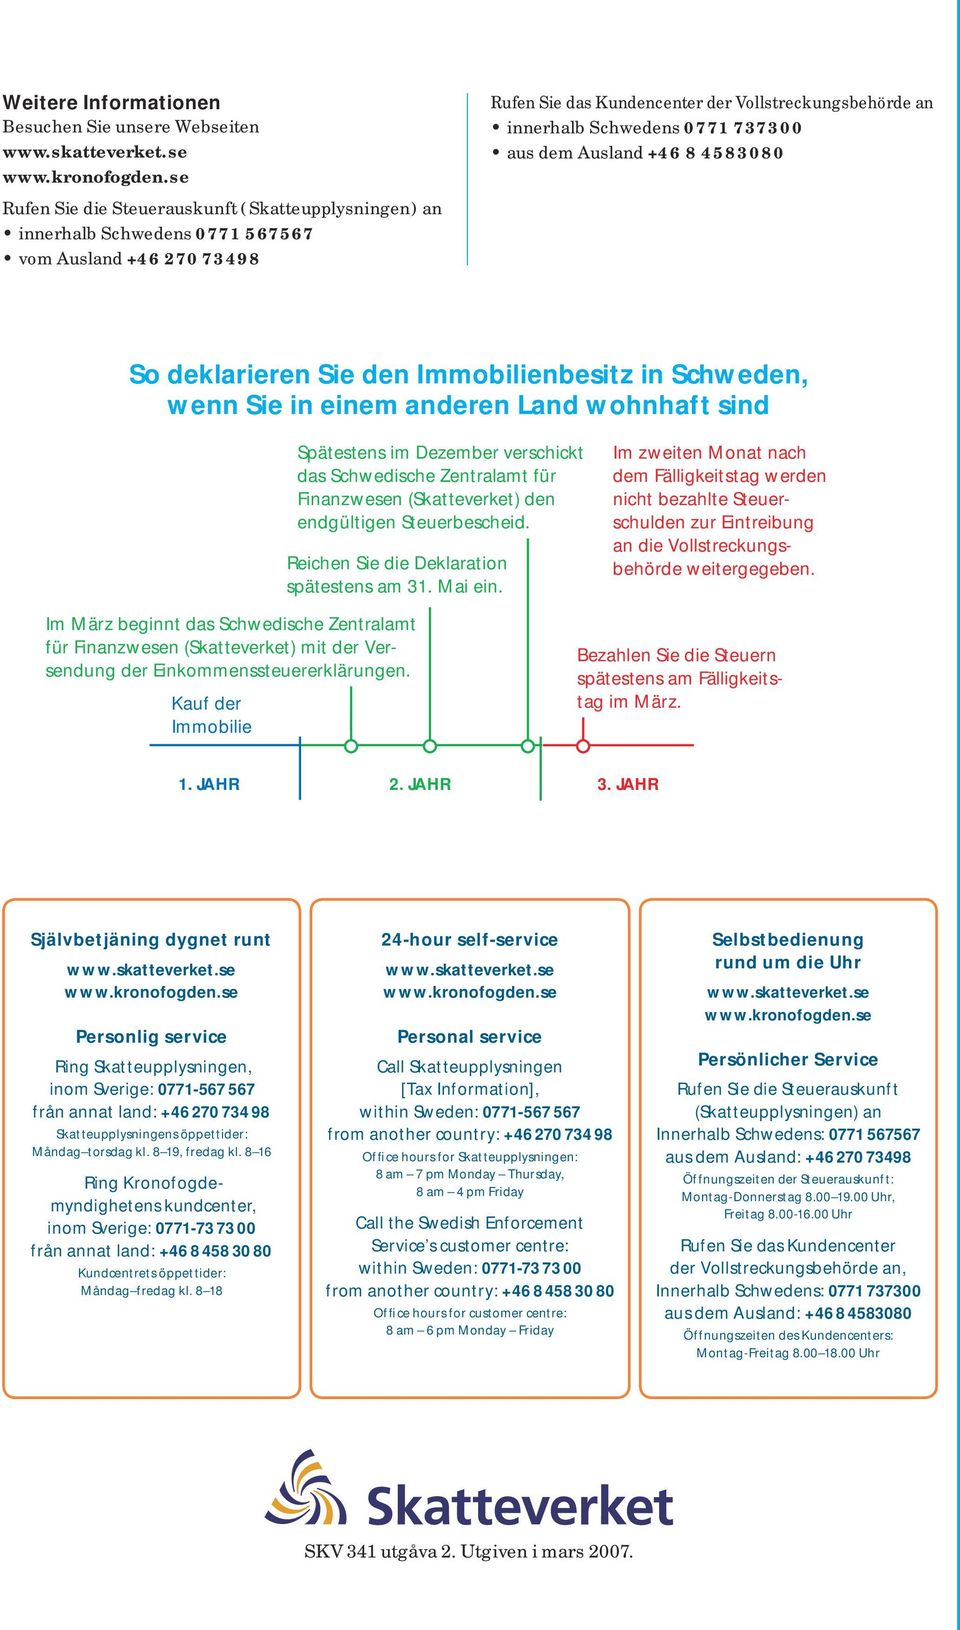 Dezember verschickt das Schwedische Zentral amt für Finanzwesen (Skatte verket) den endgültigen Steuerbescheid. Reichen Sie die Deklaration spätestens am 31. Mai ein.